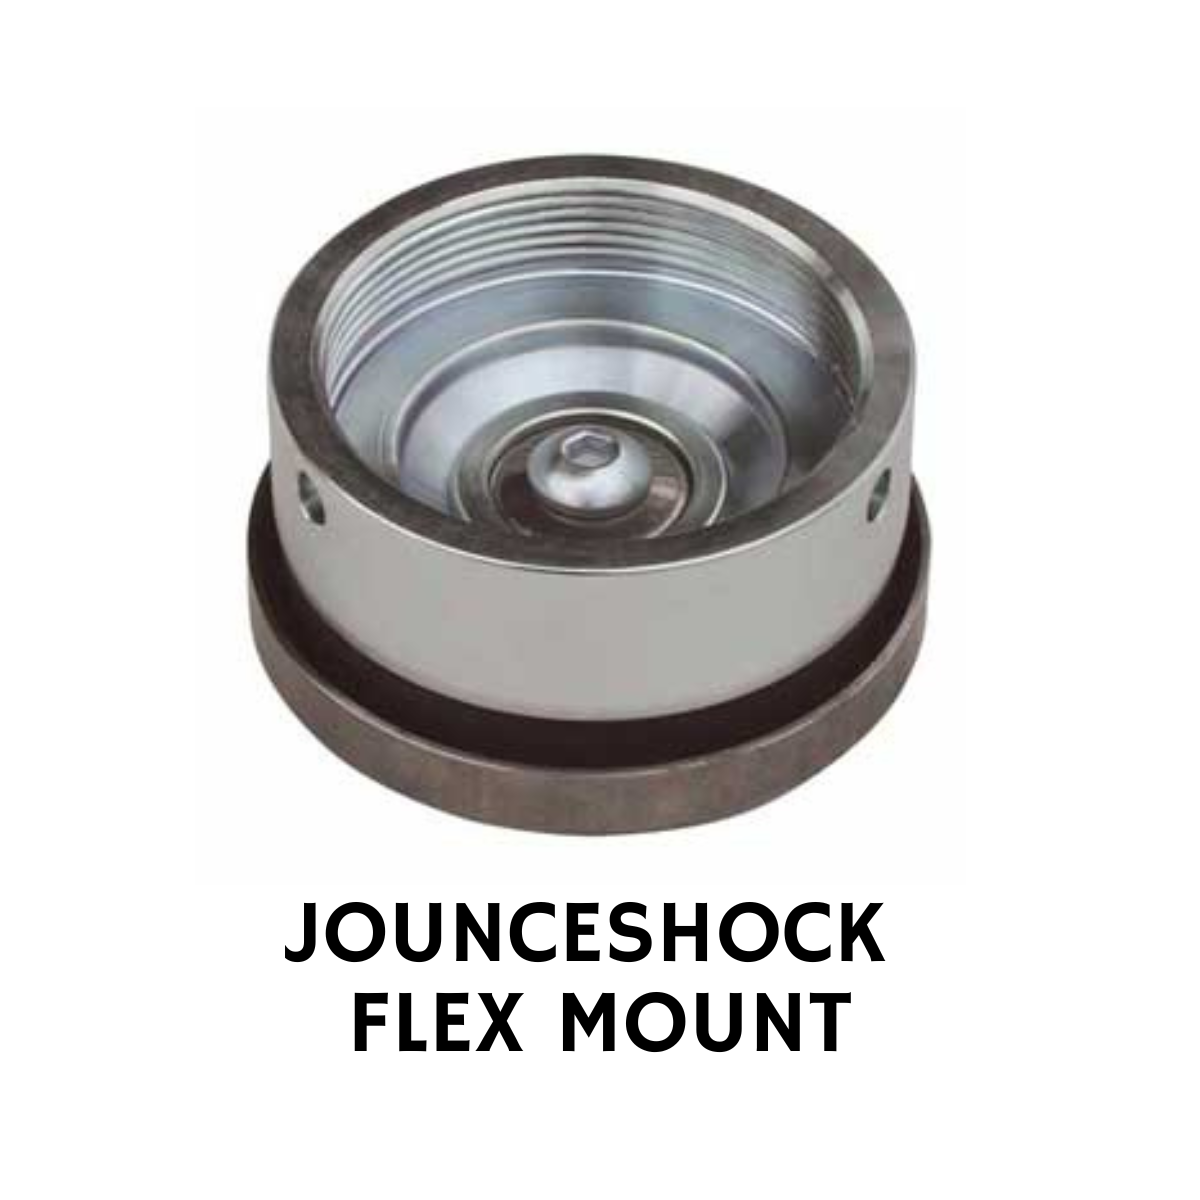 JOUNCESHOCK FLEX MOUNT